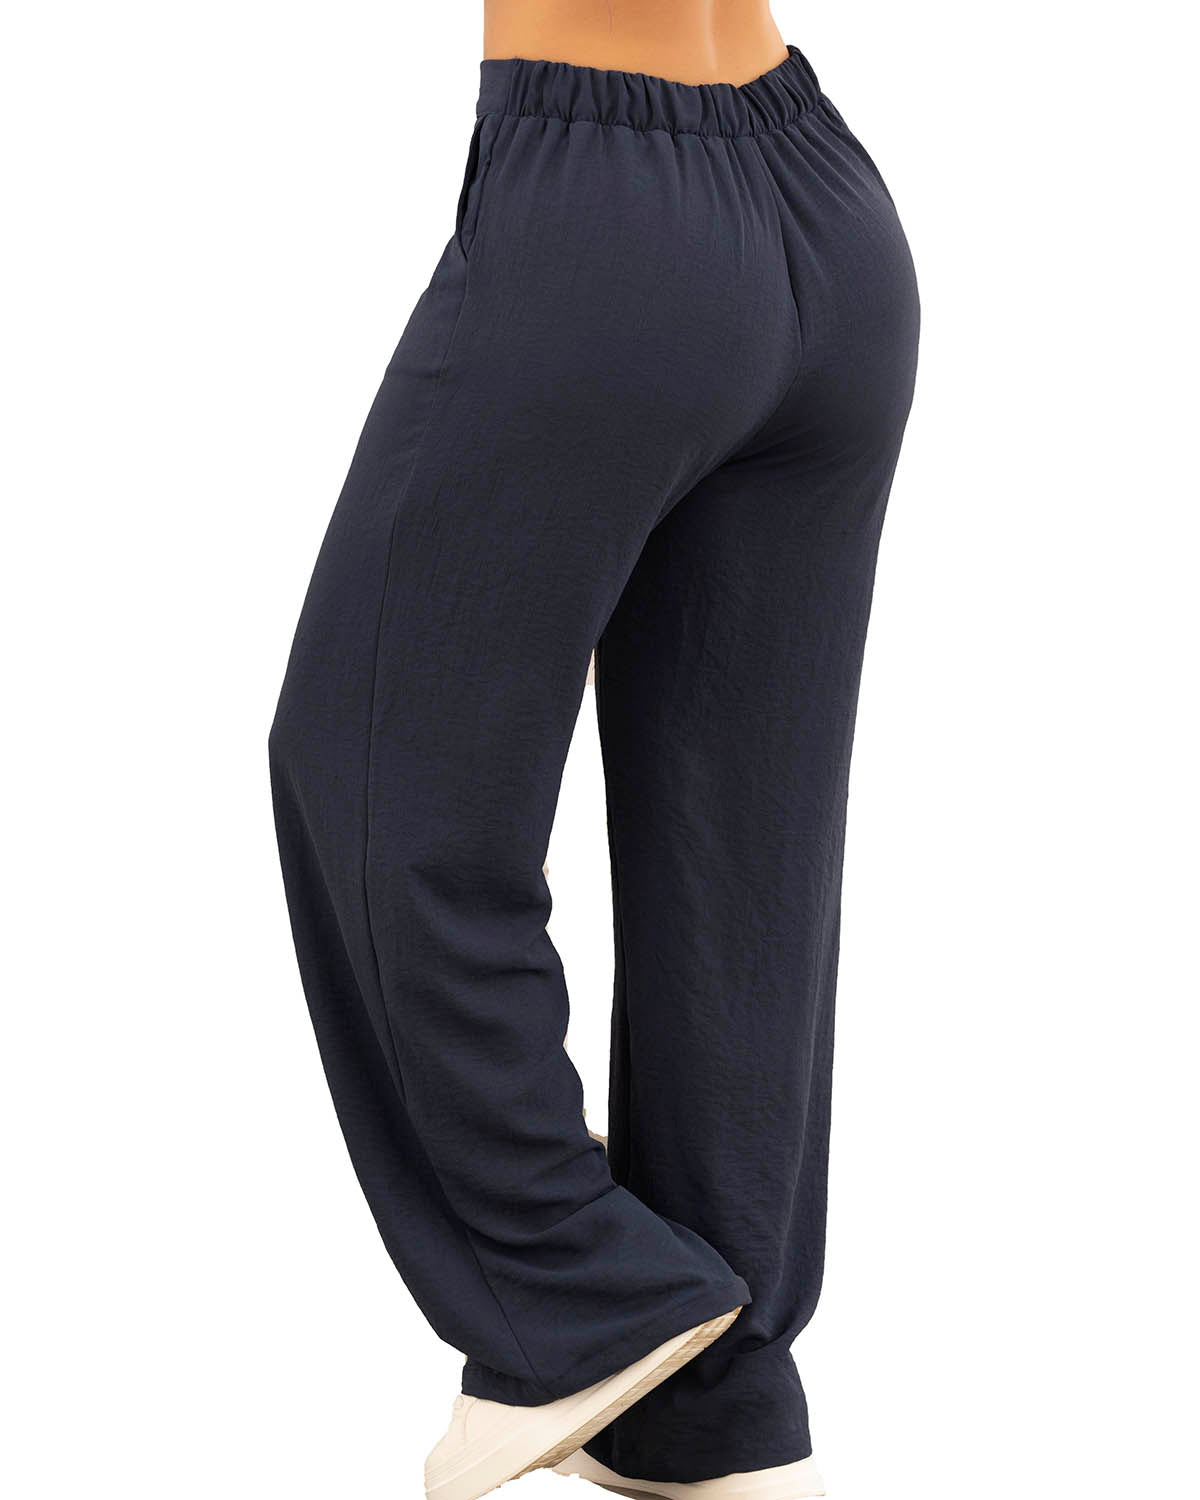 Puntoco Mujer Moda Casual Estampados Cintura Elástica Pantalones Largos  Rectos Pantalones De Chándal Puntoco Puntoco-6731